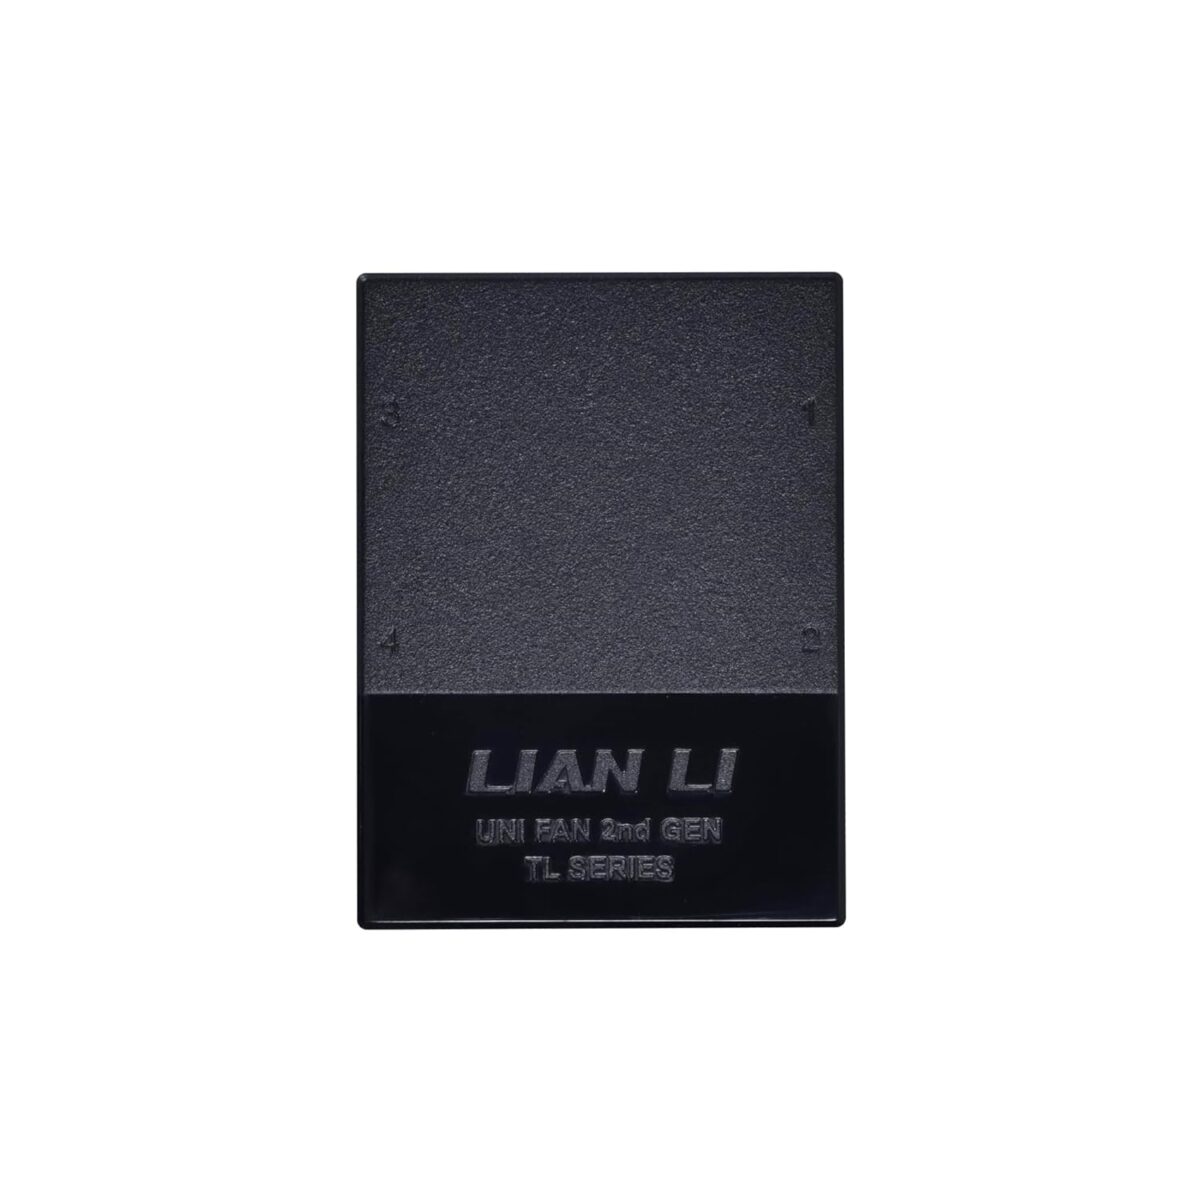 Lian Li UNIFAN HUB TL White - UNI HUB - TL series L-Connect 3 Controller White - LIAN LI 2.35.65.01.065